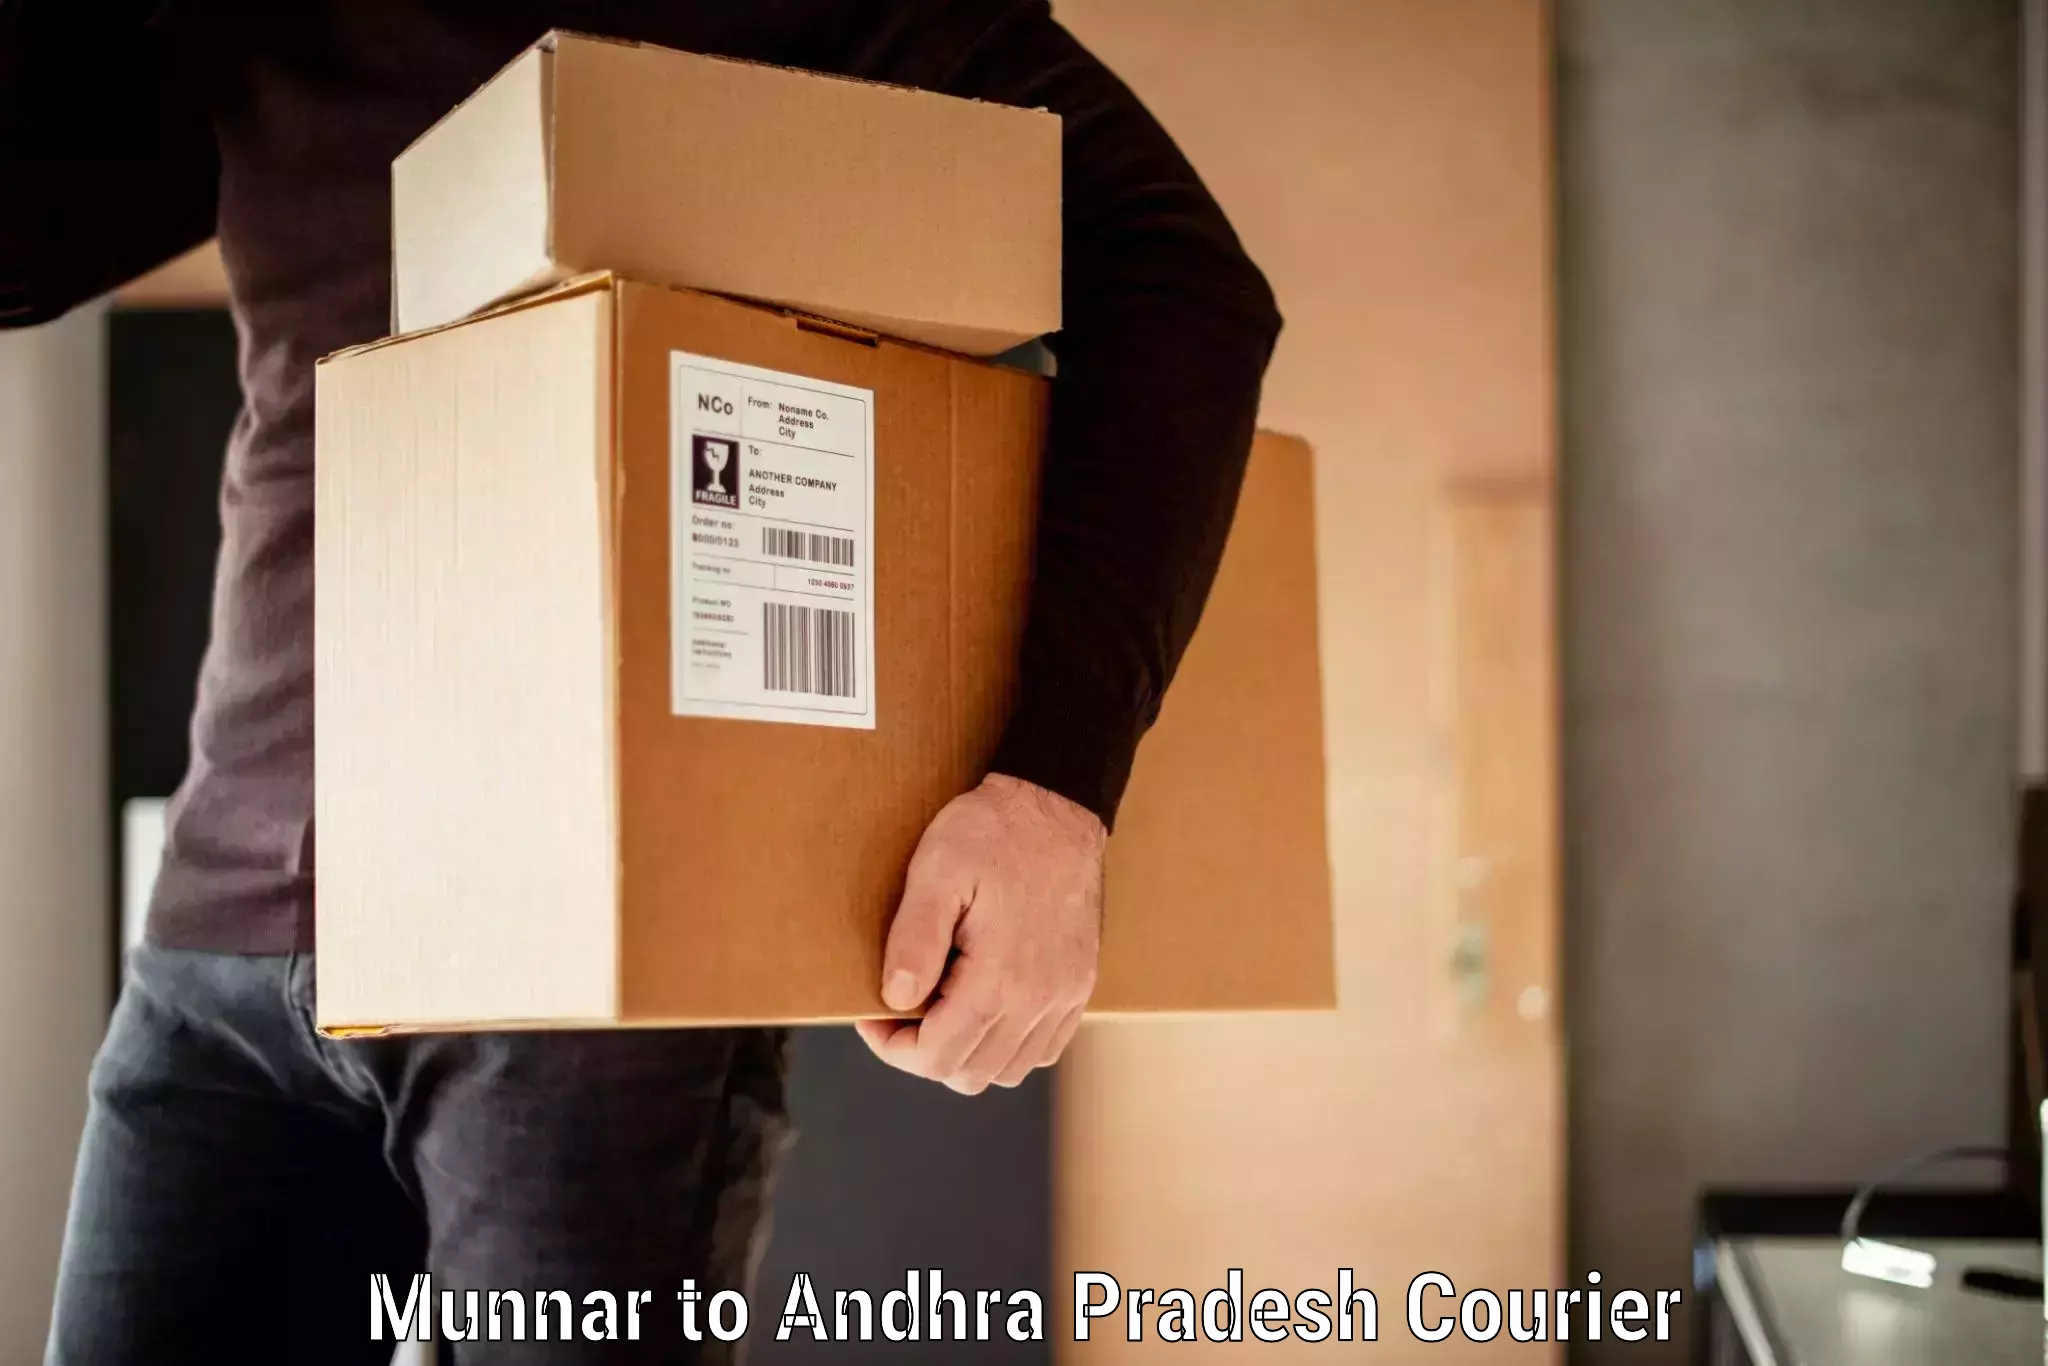 Baggage courier FAQs Munnar to Jinnuru